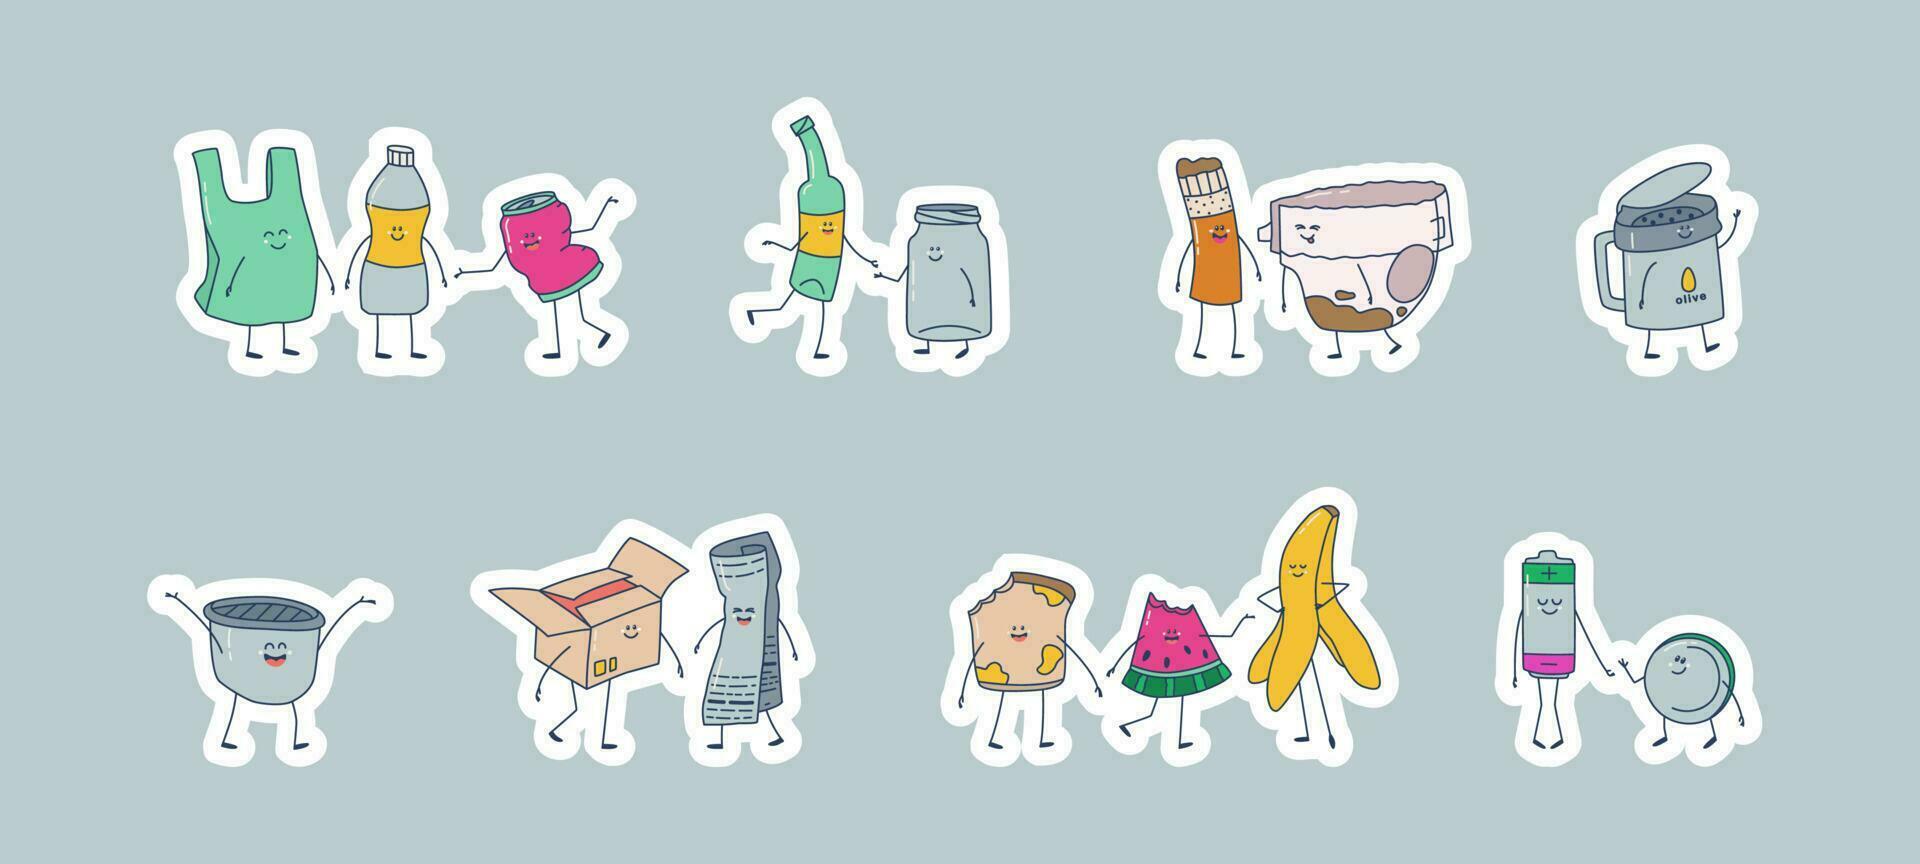 reeks van stickers voor verspilling sorteren uitschot blikjes. schattig kawaii uitschot karakters. vector illustraties voor ontwerp, stickers, enz.